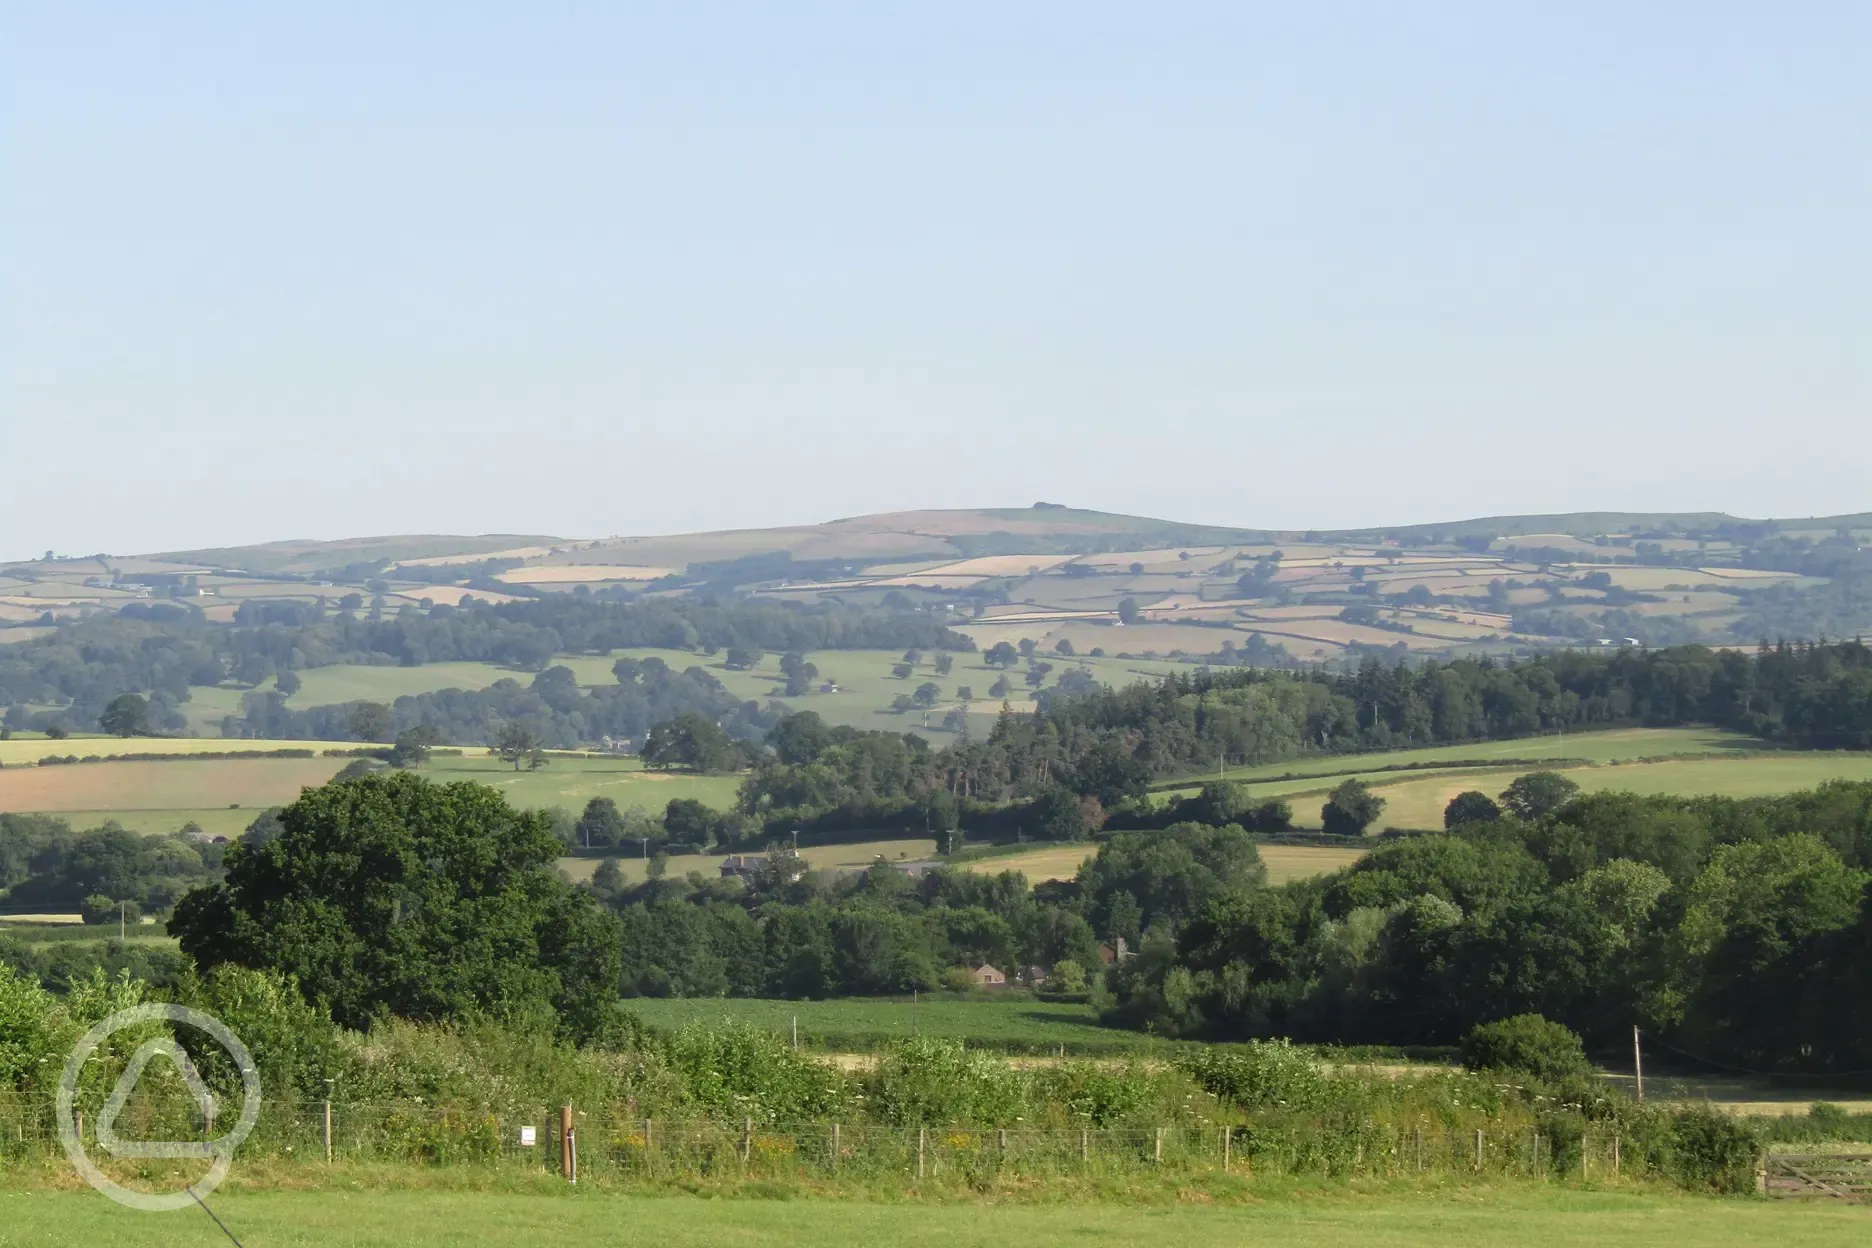 Countryside views